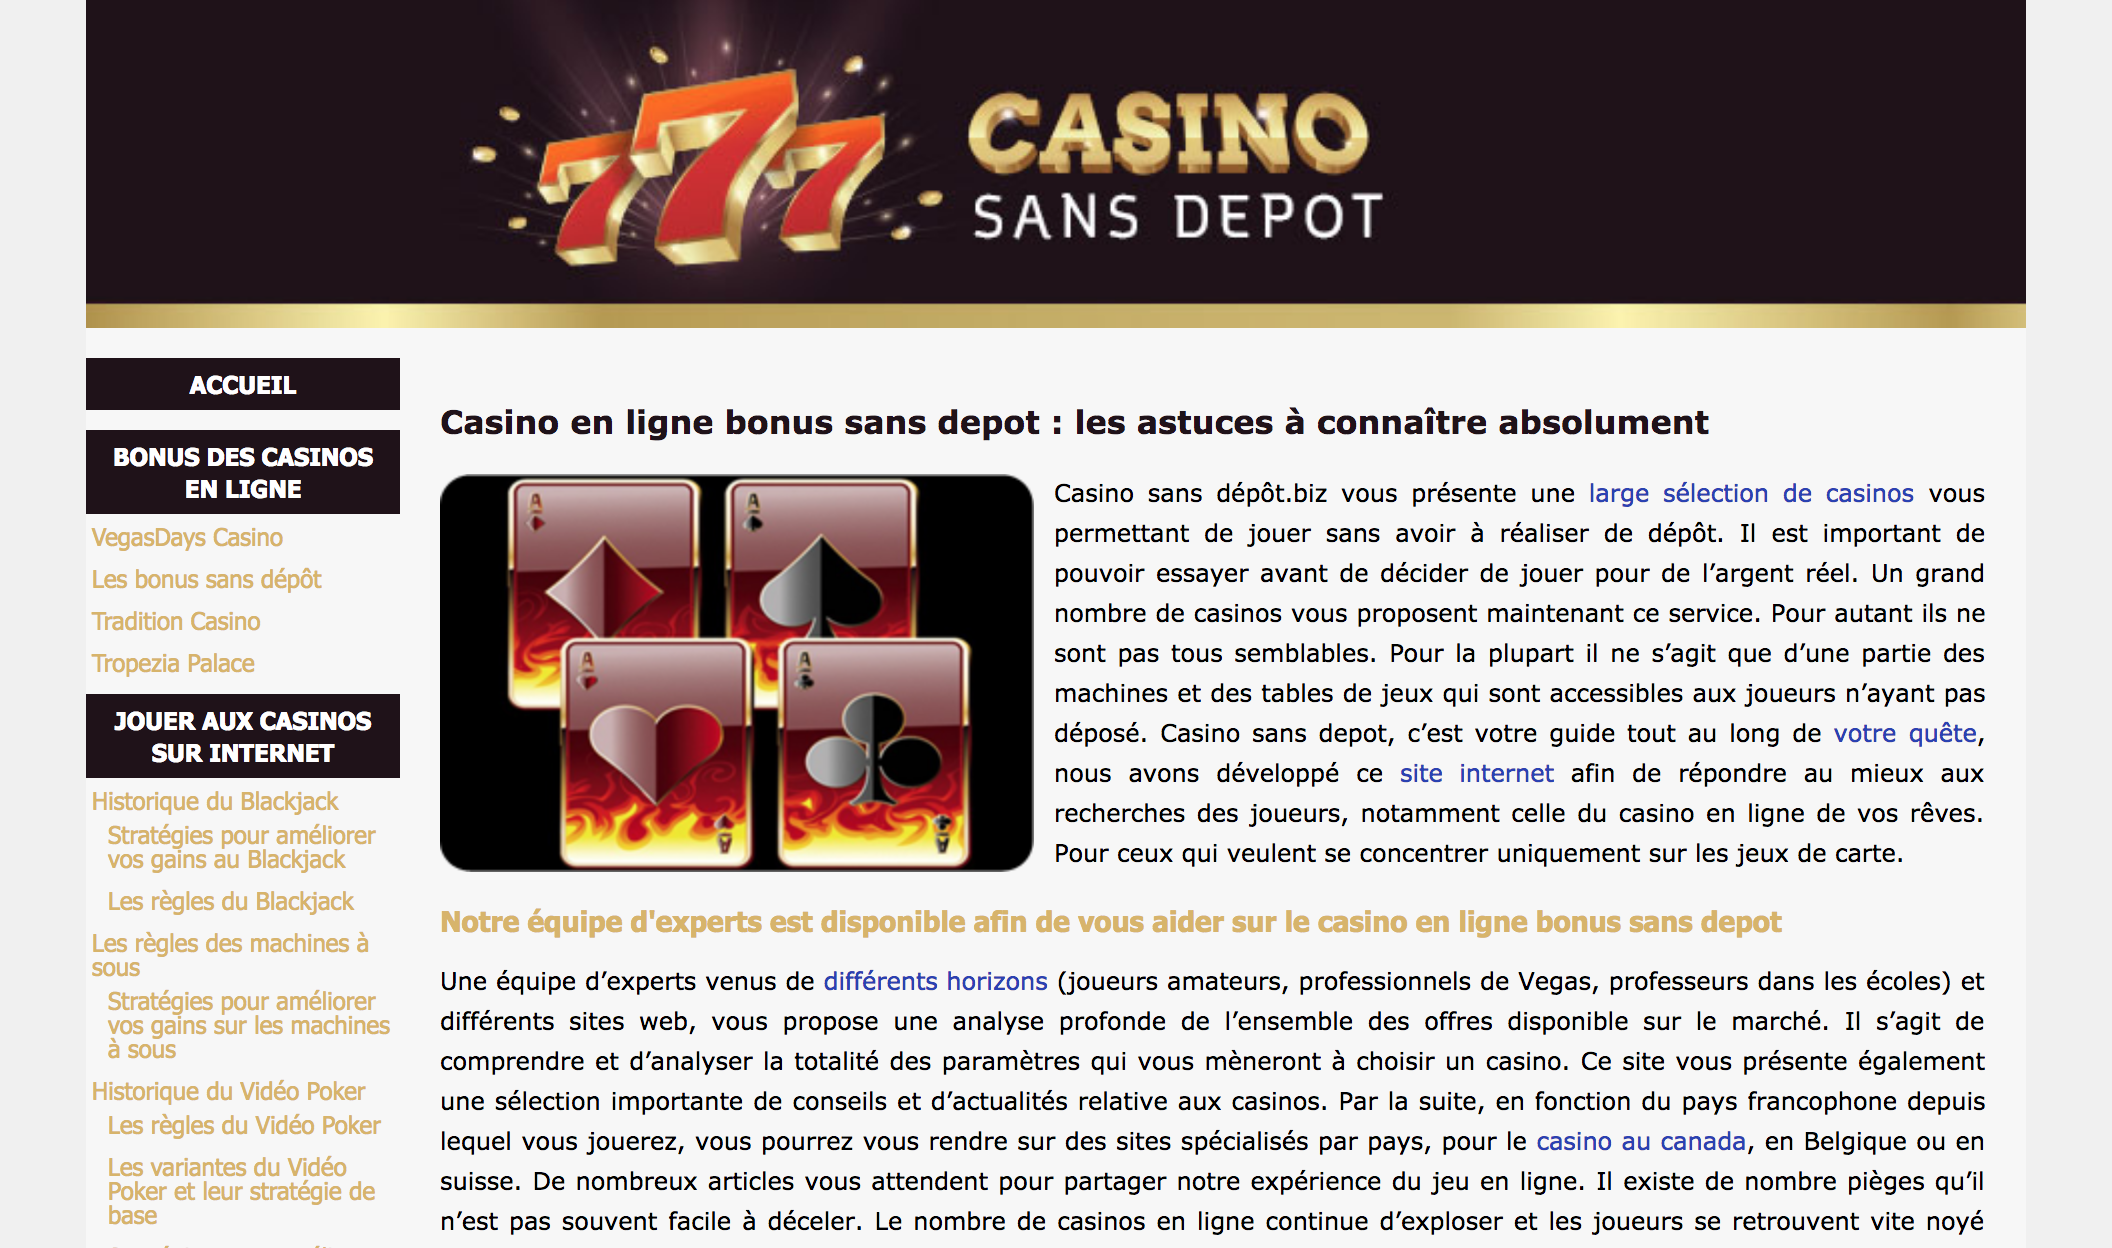 Casino en ligne bonus sans depot guide